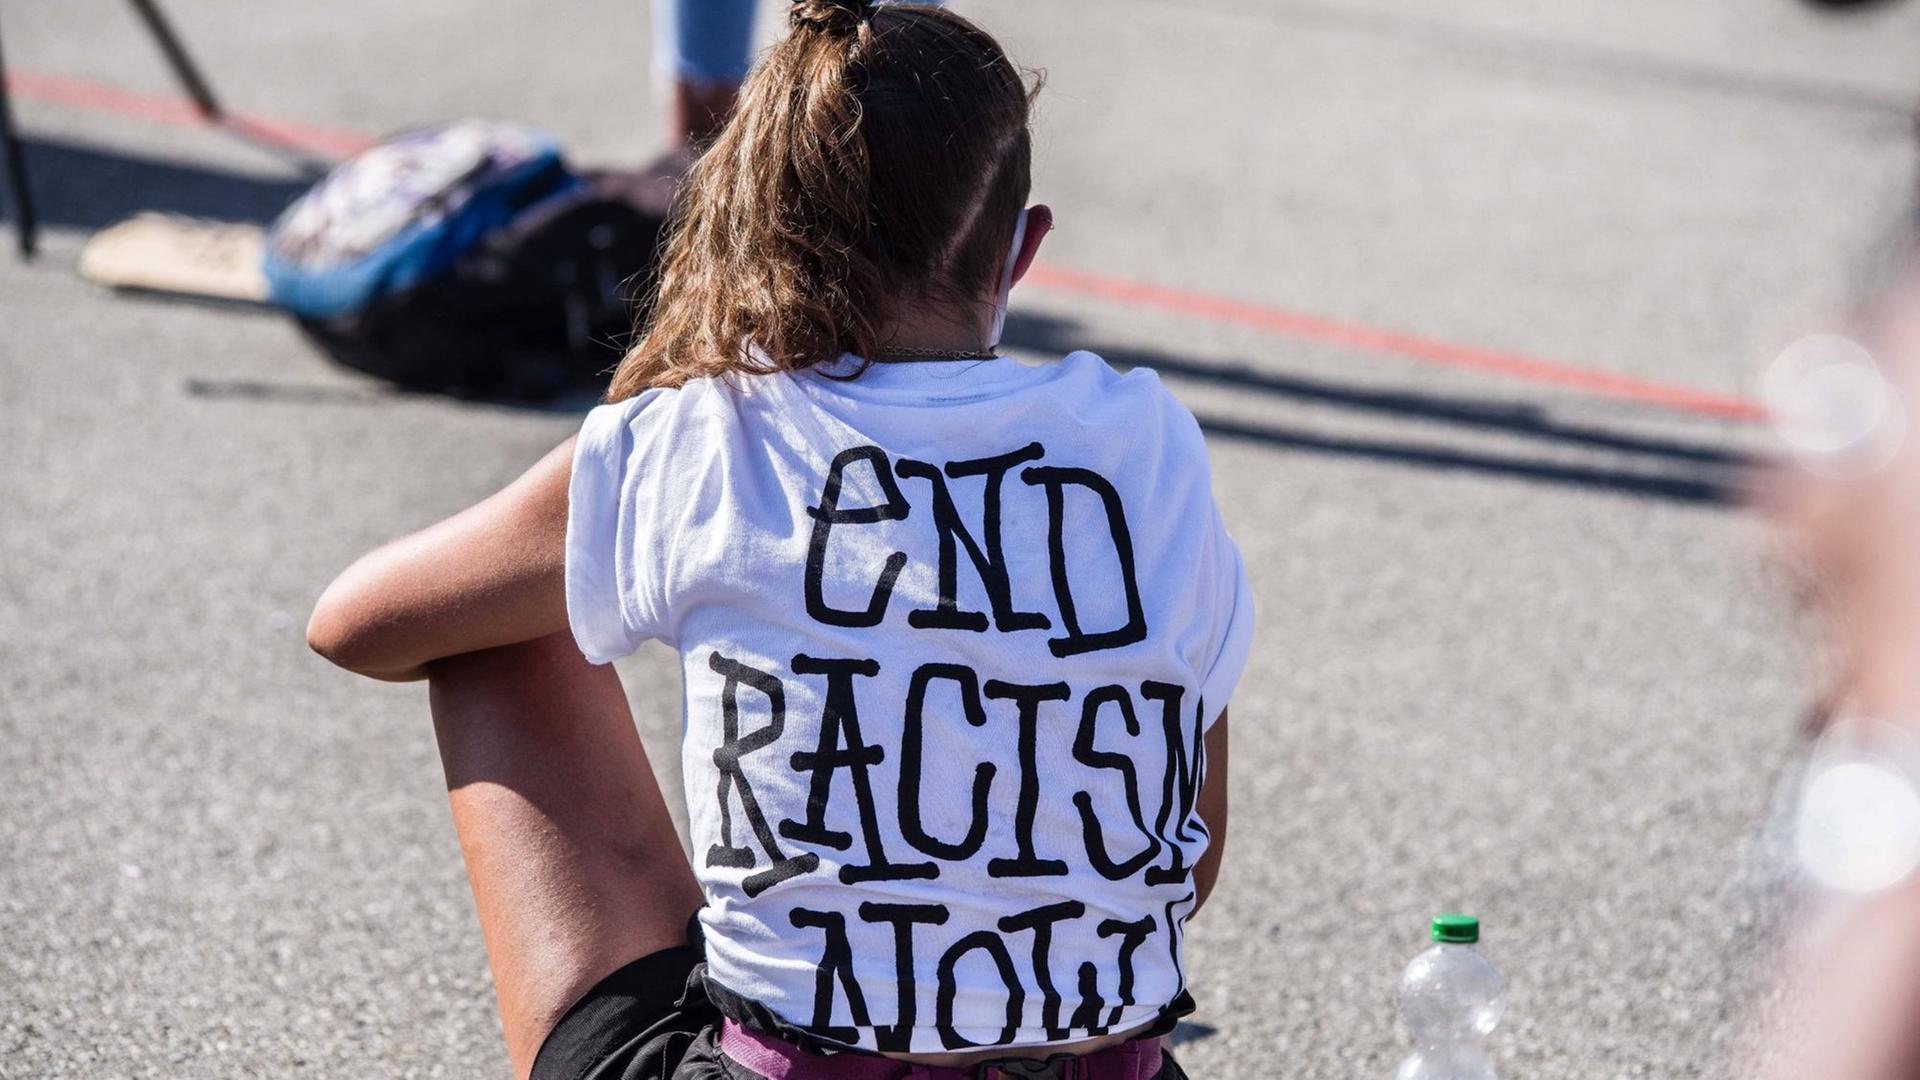 Teilnehmerin einer Demonstration gegen Rassismus Ende Juni 2020 in München